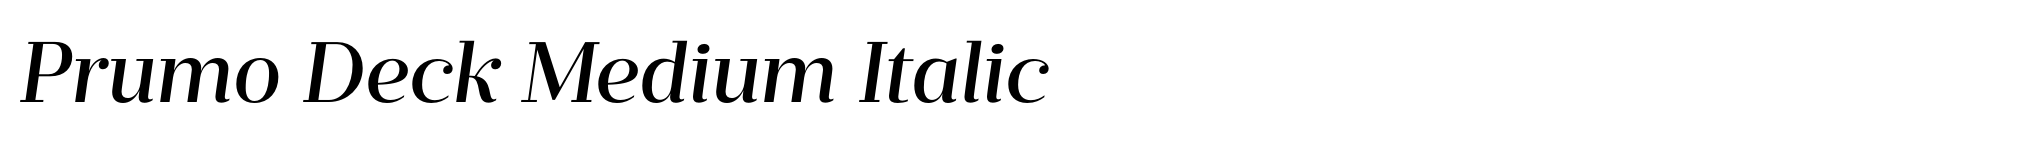 Prumo Deck Medium Italic image